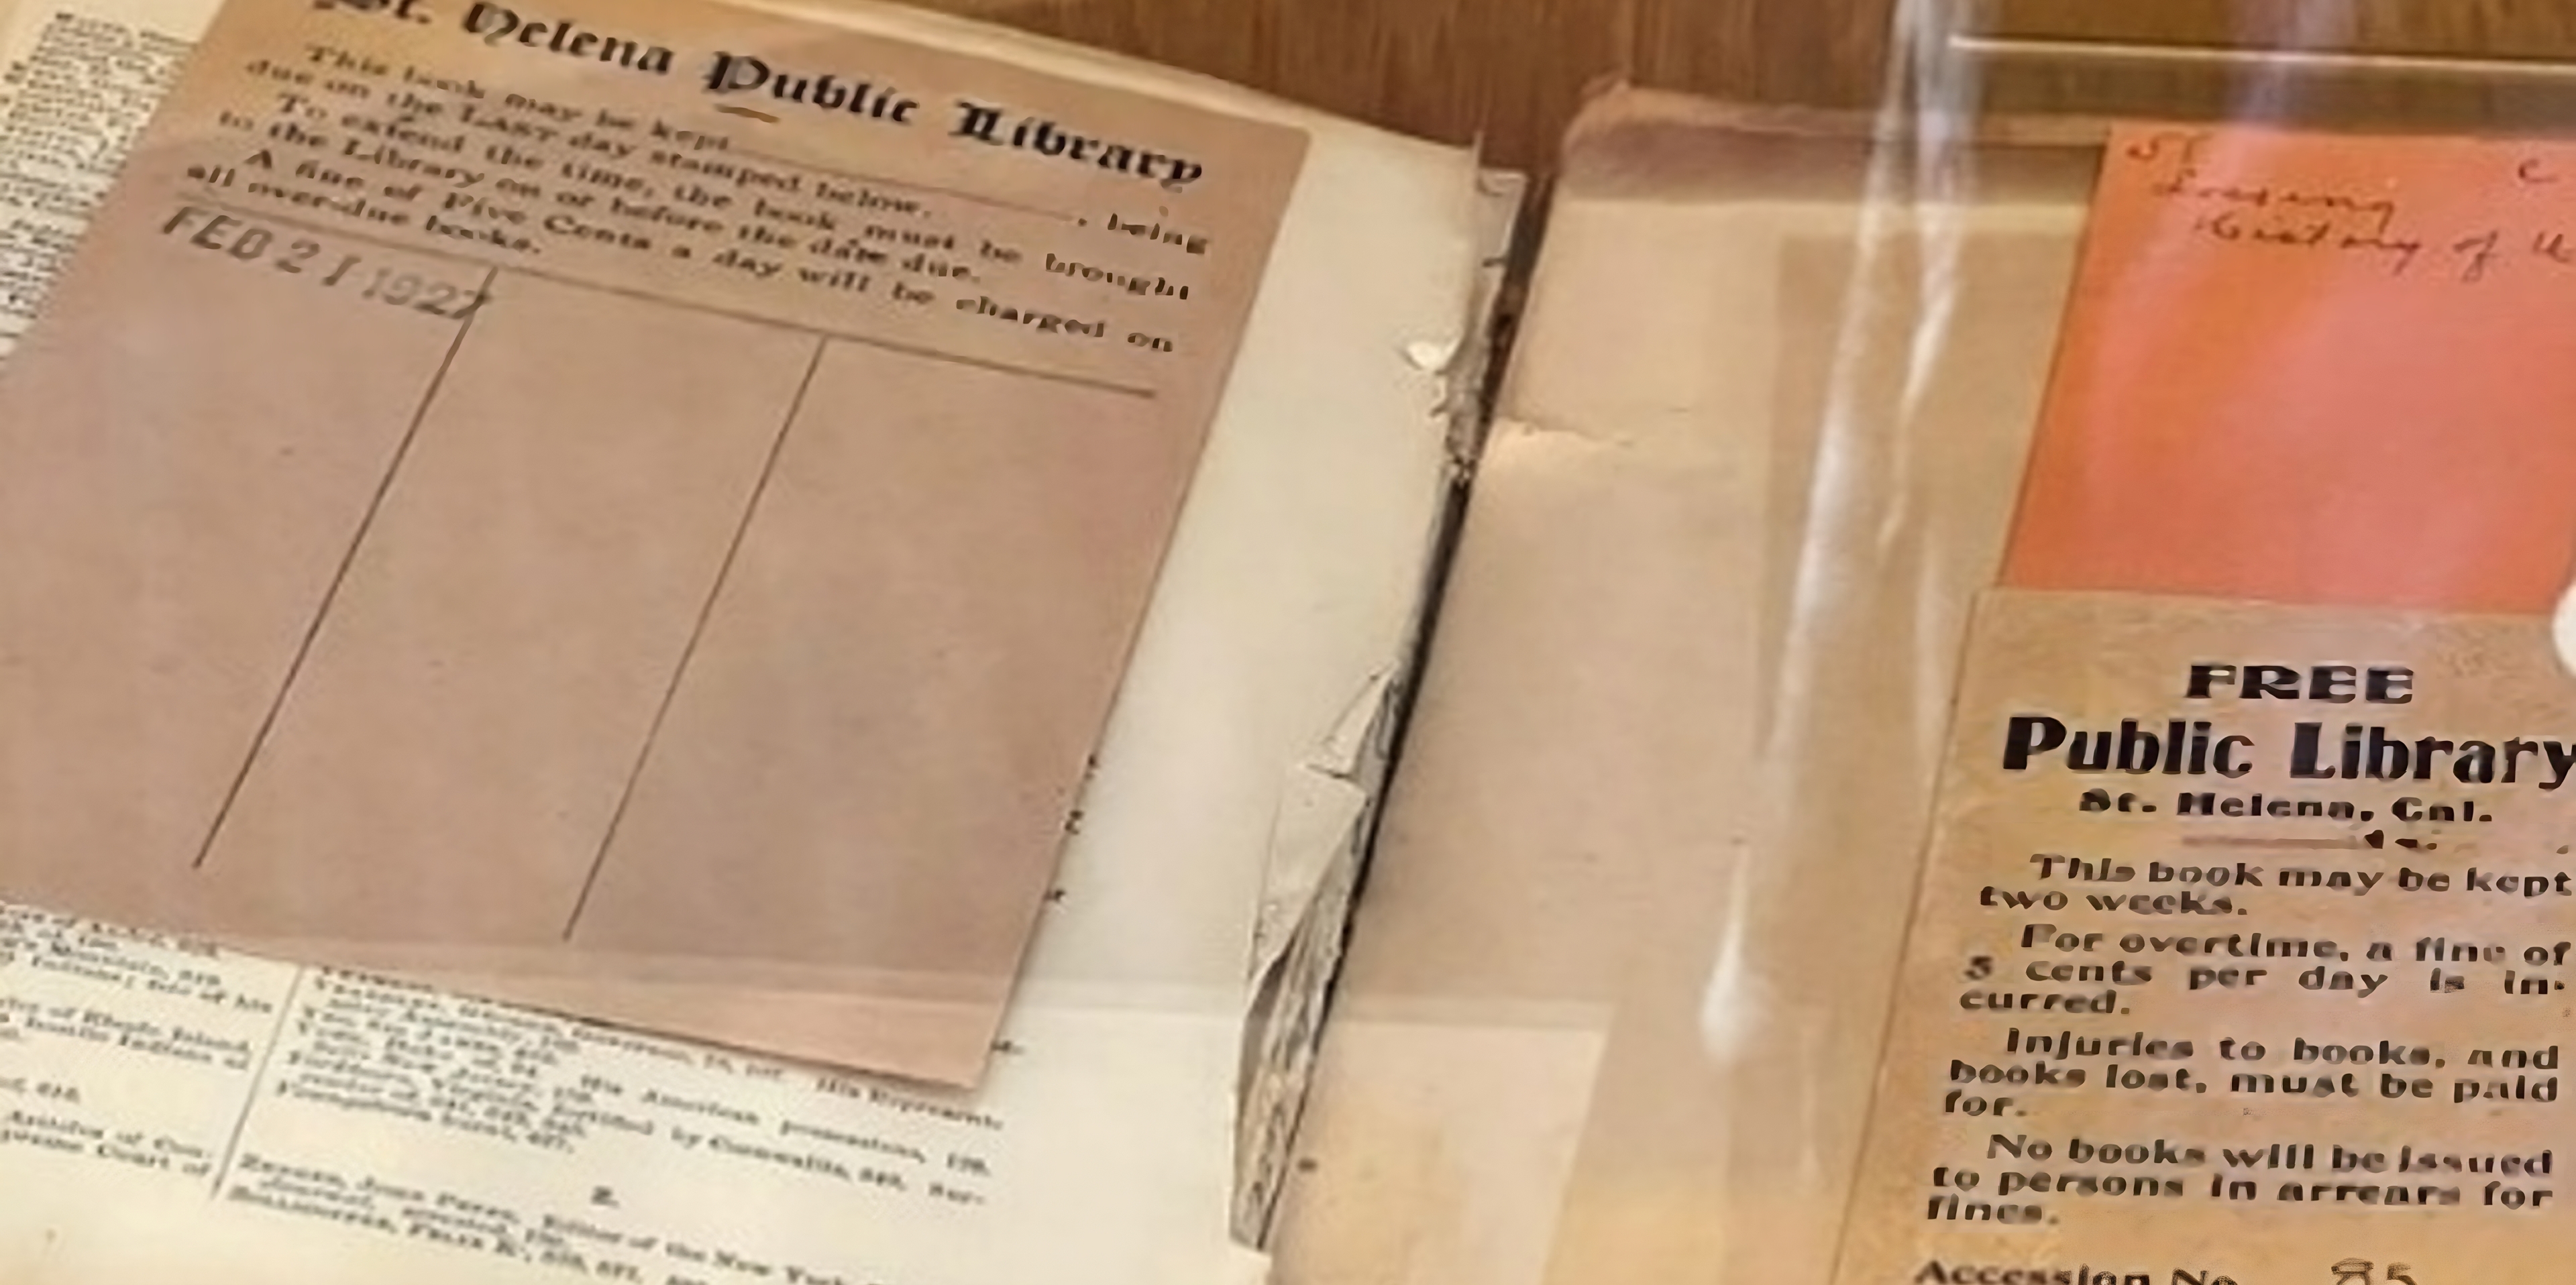 El libro fue tomado en préstamo en febrero de 1927. Alguien lo devolvió a la Biblioteca Pública de Santa Helena, en California, tras 96 años. (Captura de pantalla).